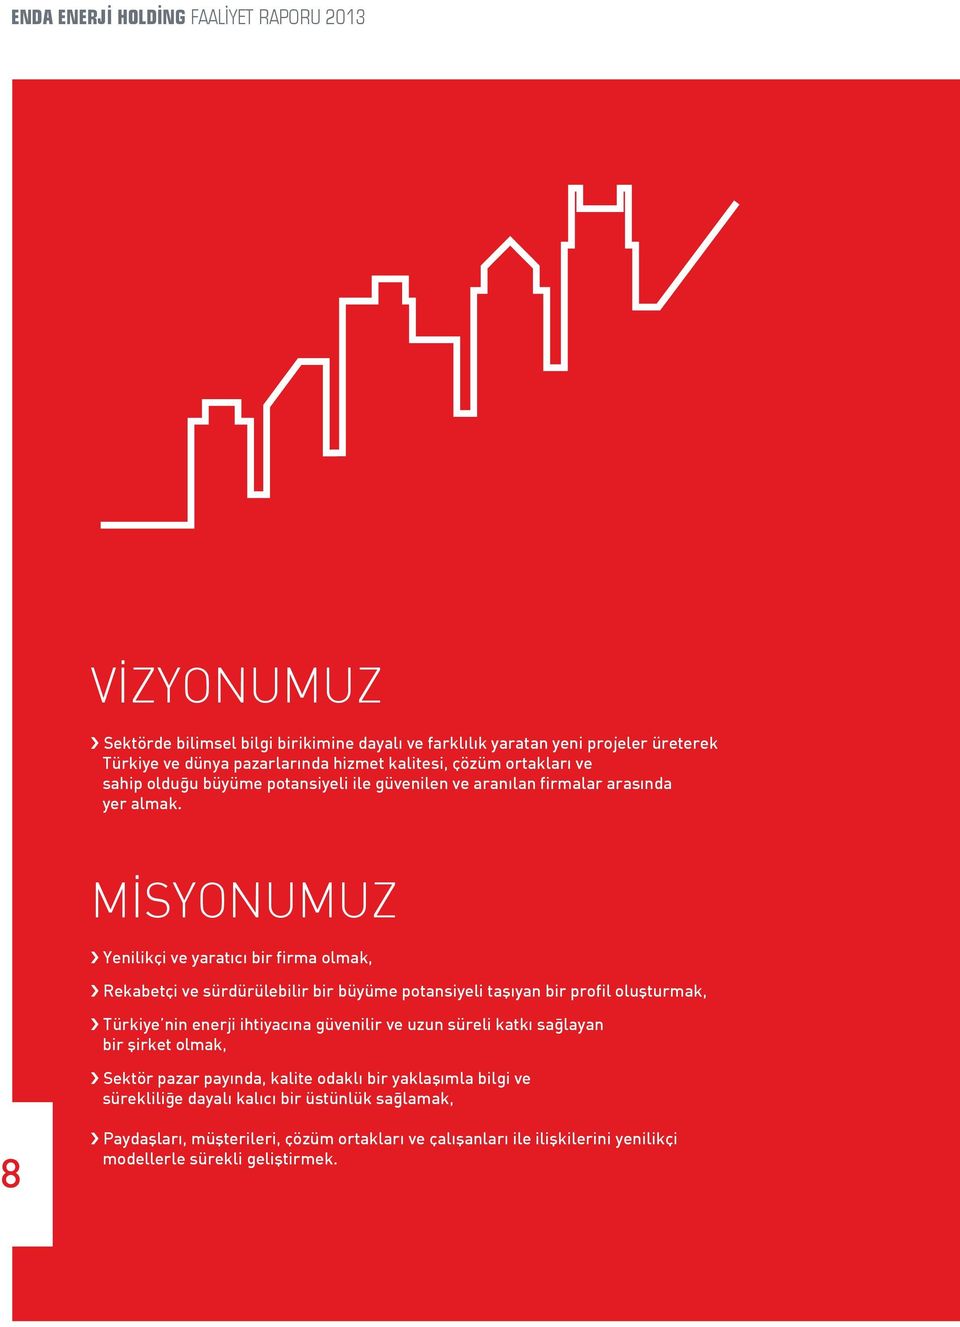 MİSYONUMUZ Yenilikçi ve yaratıcı bir firma olmak, Rekabetçi ve sürdürülebilir bir büyüme potansiyeli taşıyan bir profil oluşturmak, Türkiye nin enerji ihtiyacına güvenilir ve uzun